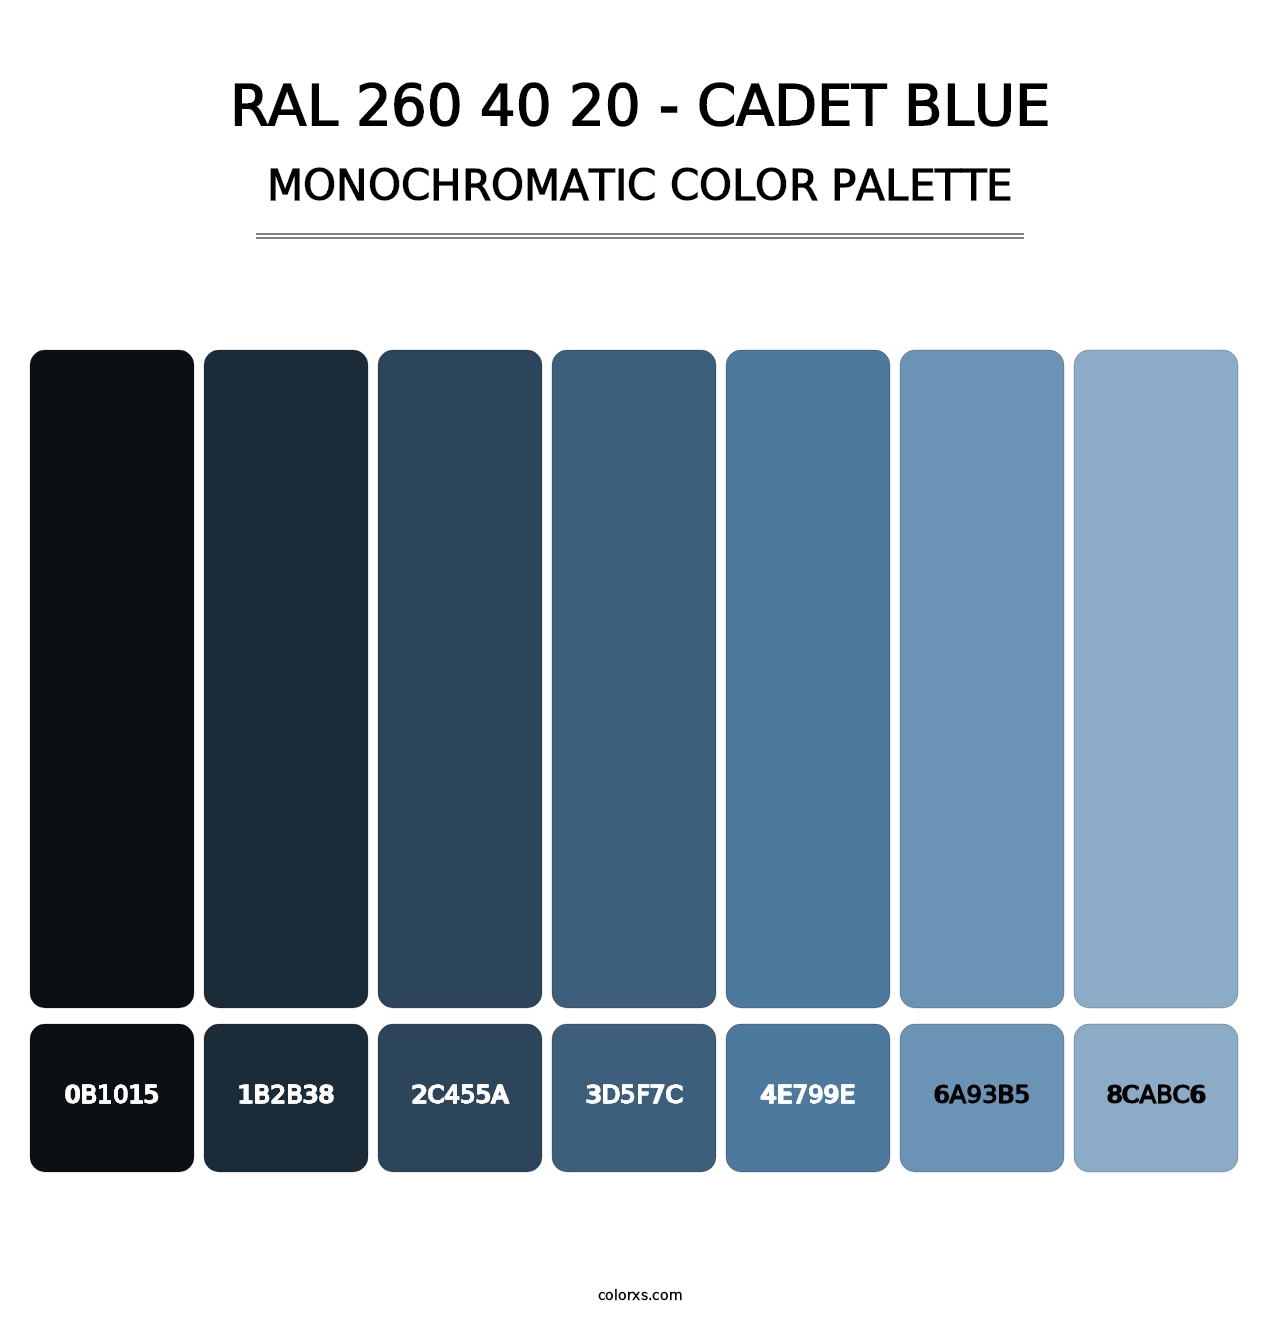 RAL 260 40 20 - Cadet Blue - Monochromatic Color Palette